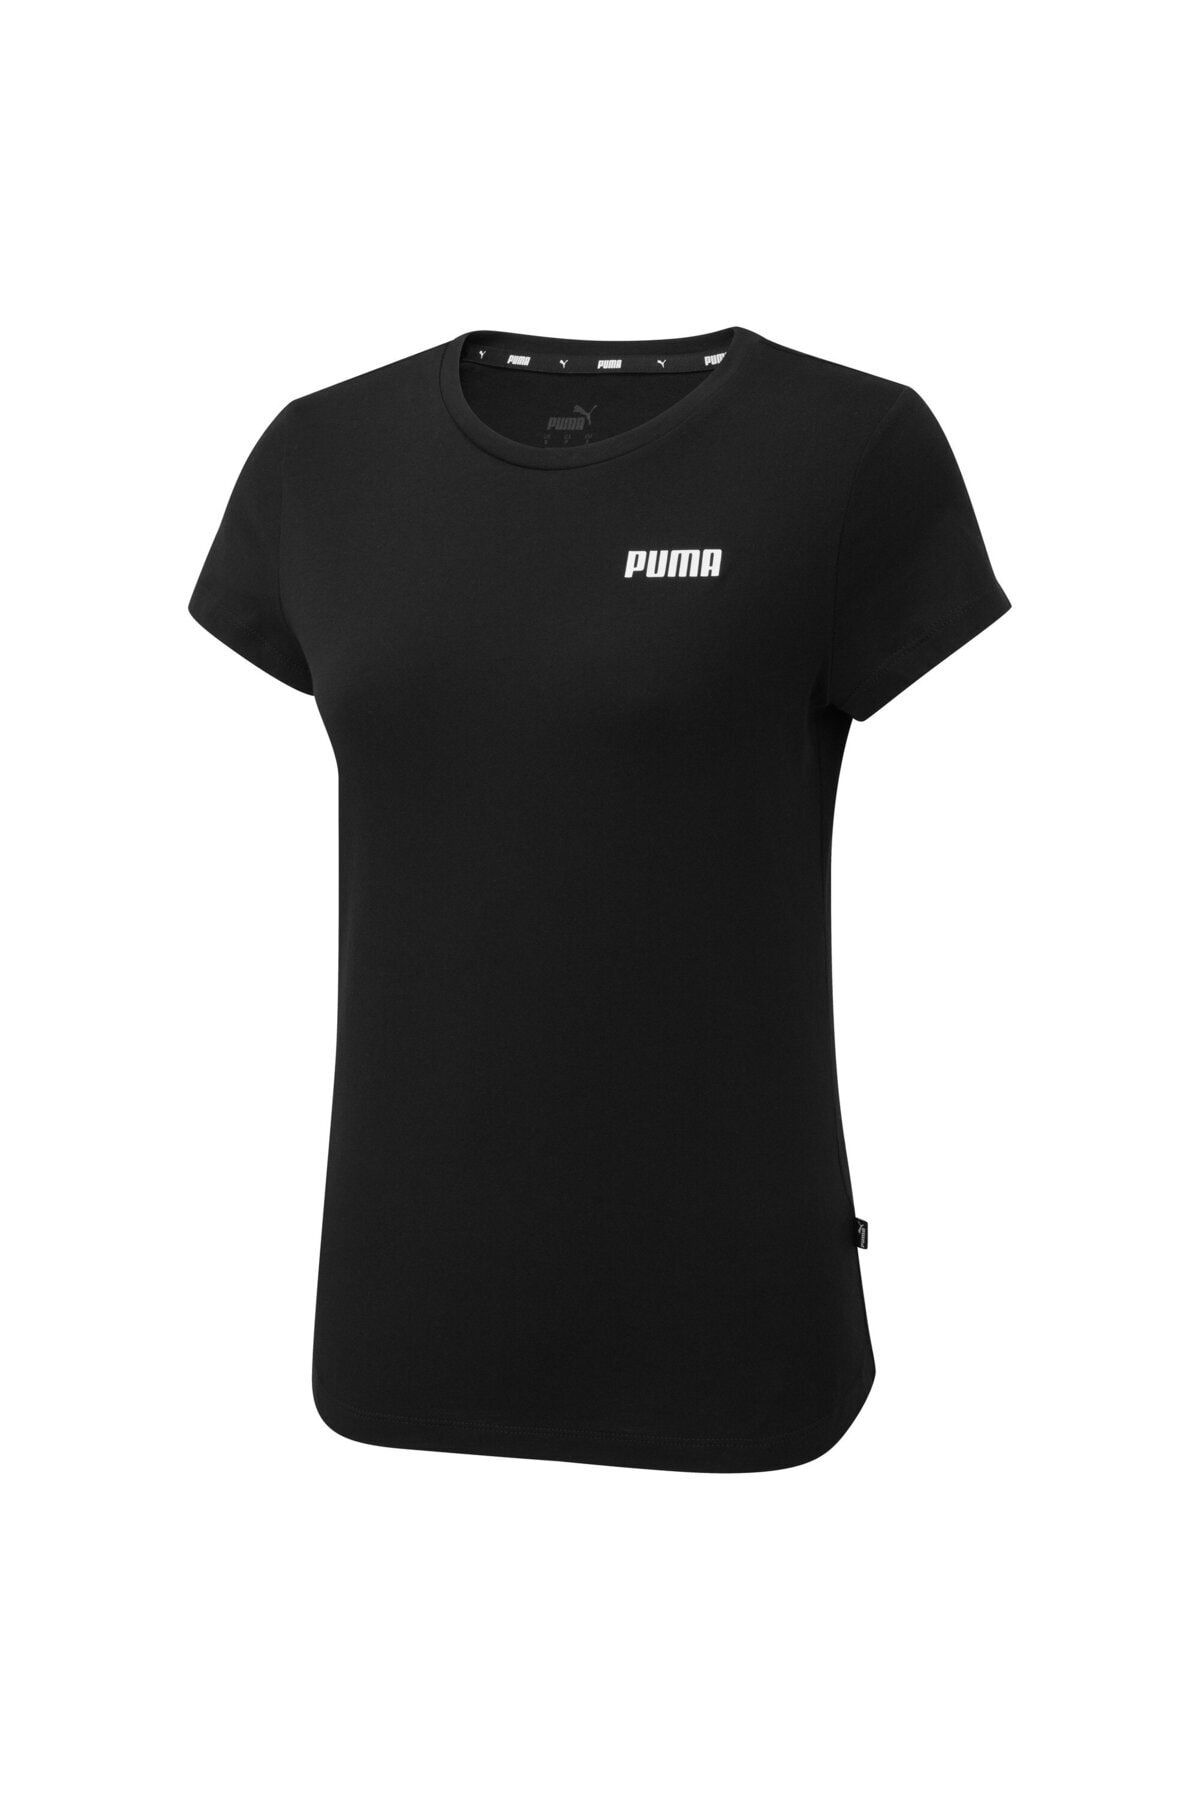 Puma ESSENTIALS Kadın Tişört